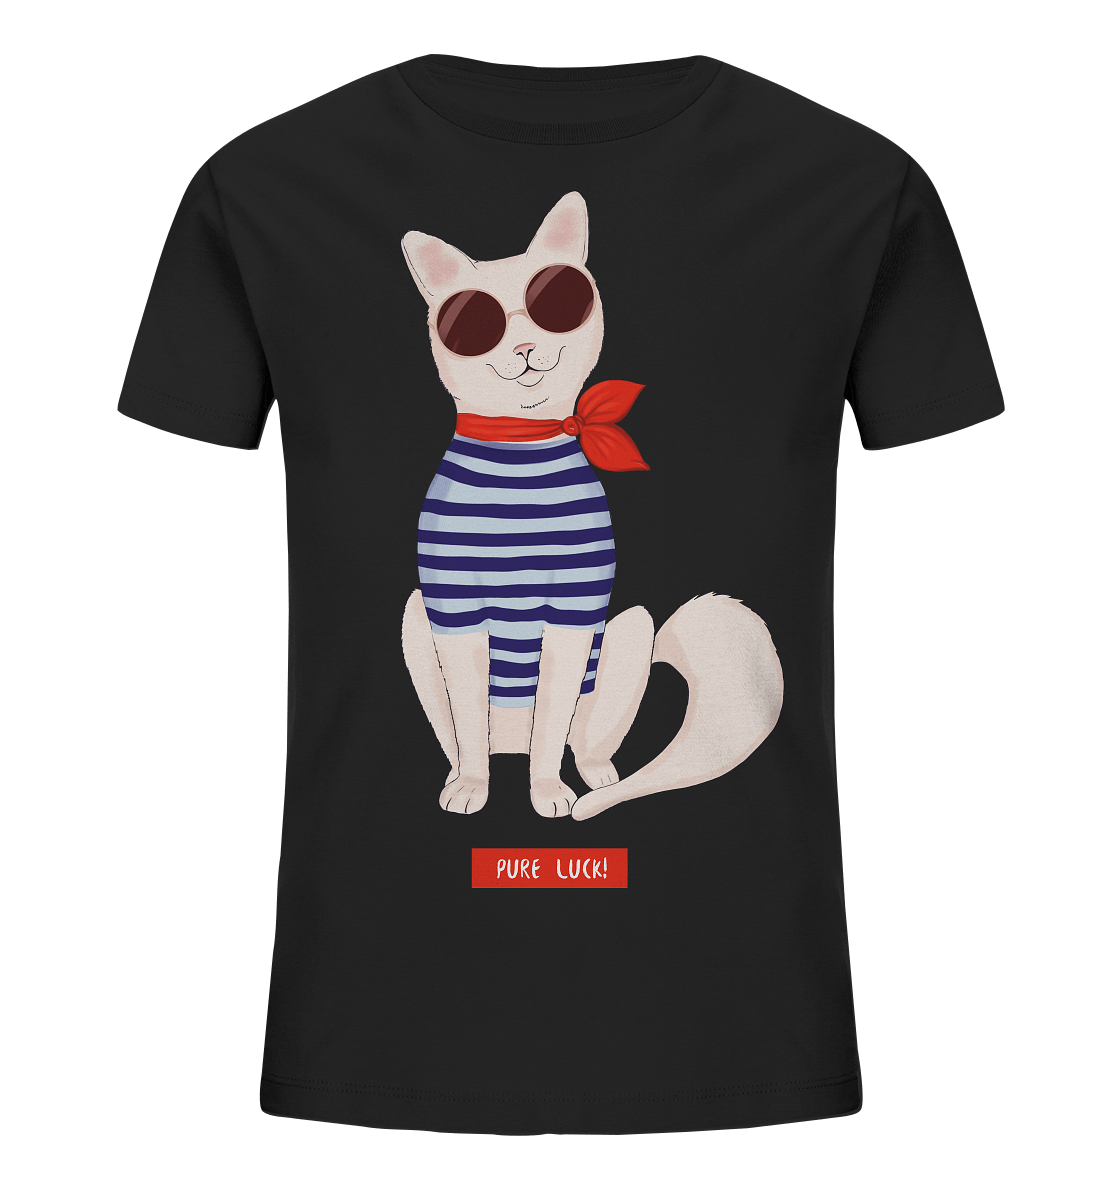 Maritime Katze Comic Kinder Shirt in schwarz mit Katze in Streifenhemd